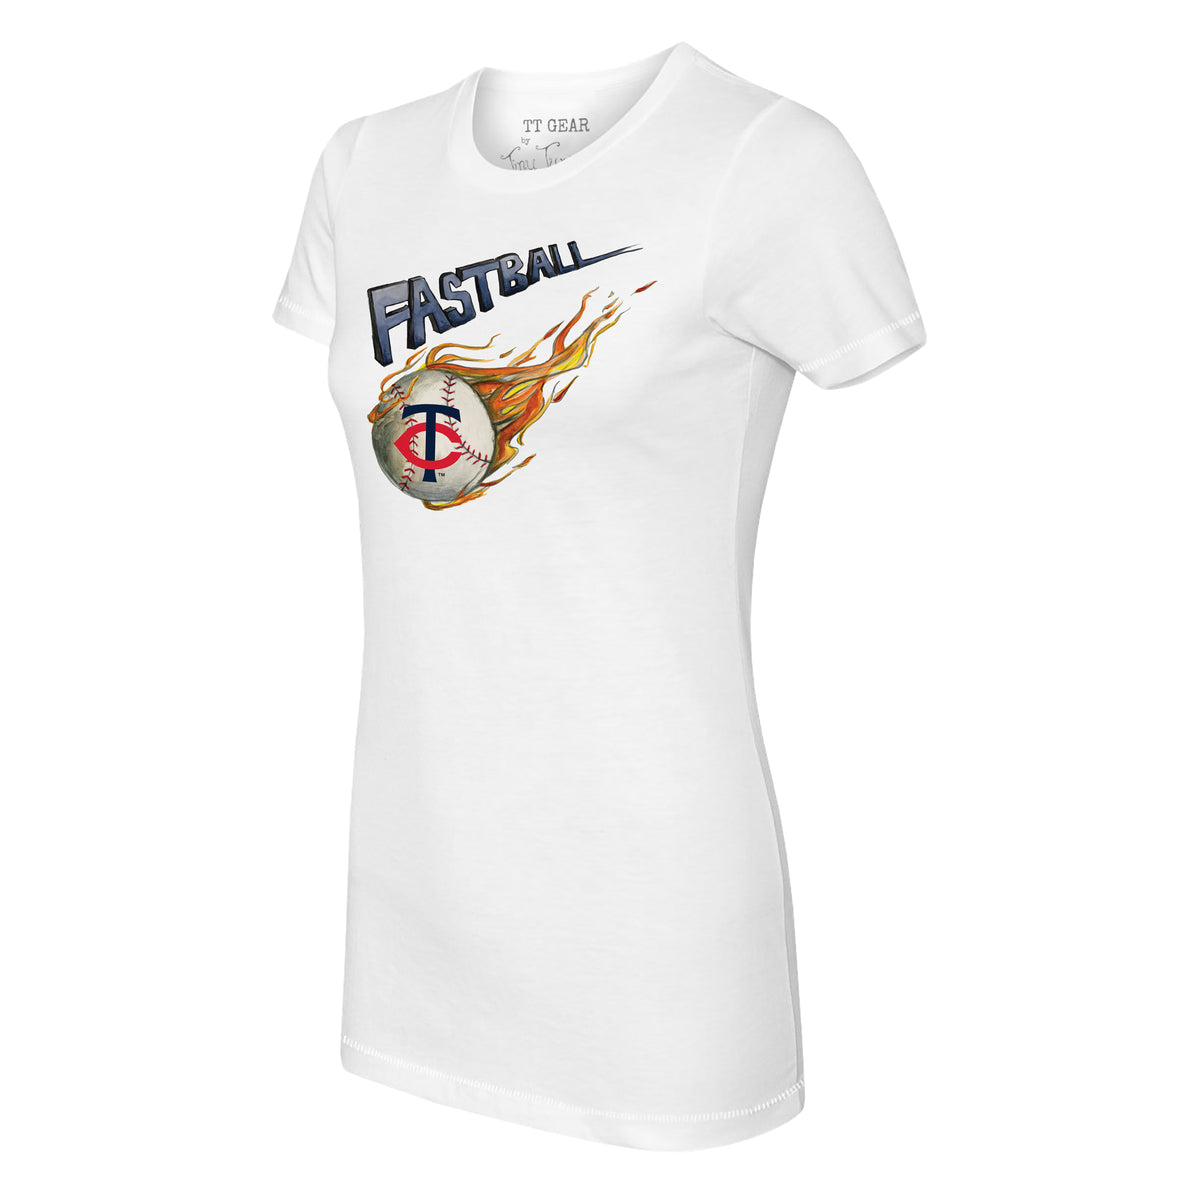 Minnesota Twins Fastball Tee Shirt